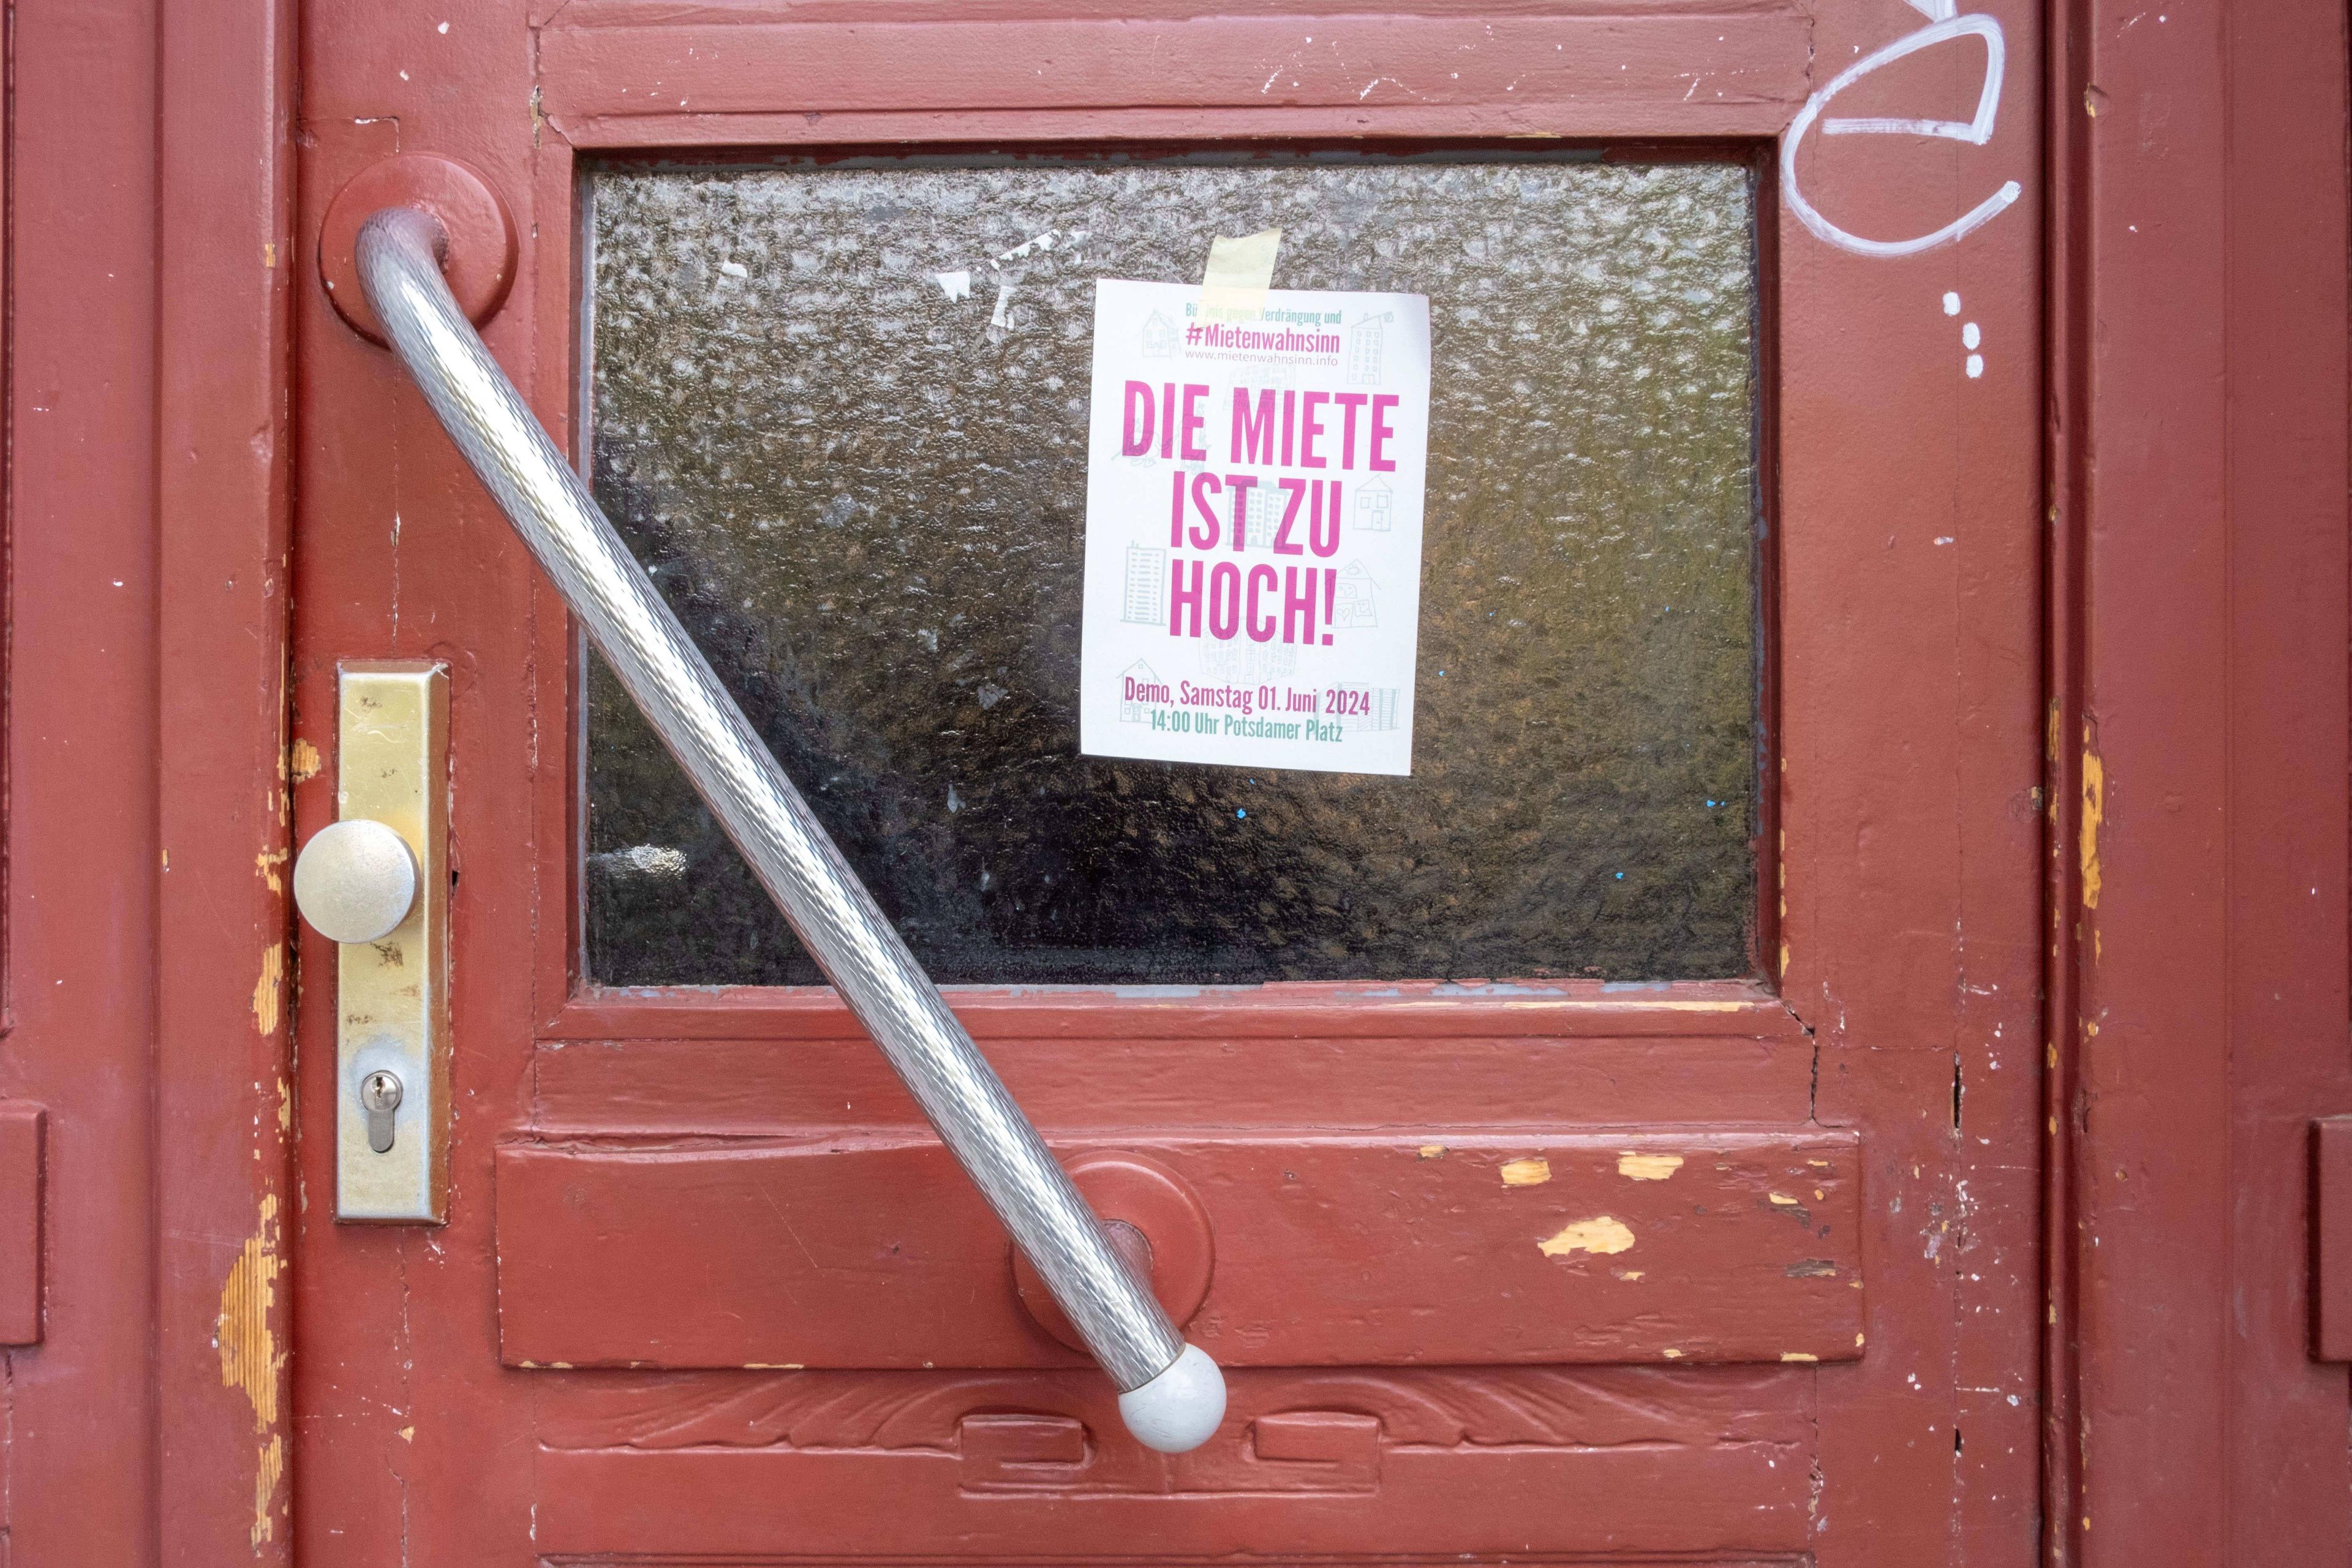 Flugblatt für eine Demonstration gegen steigende Mieten an einer Haustür in Berlin.